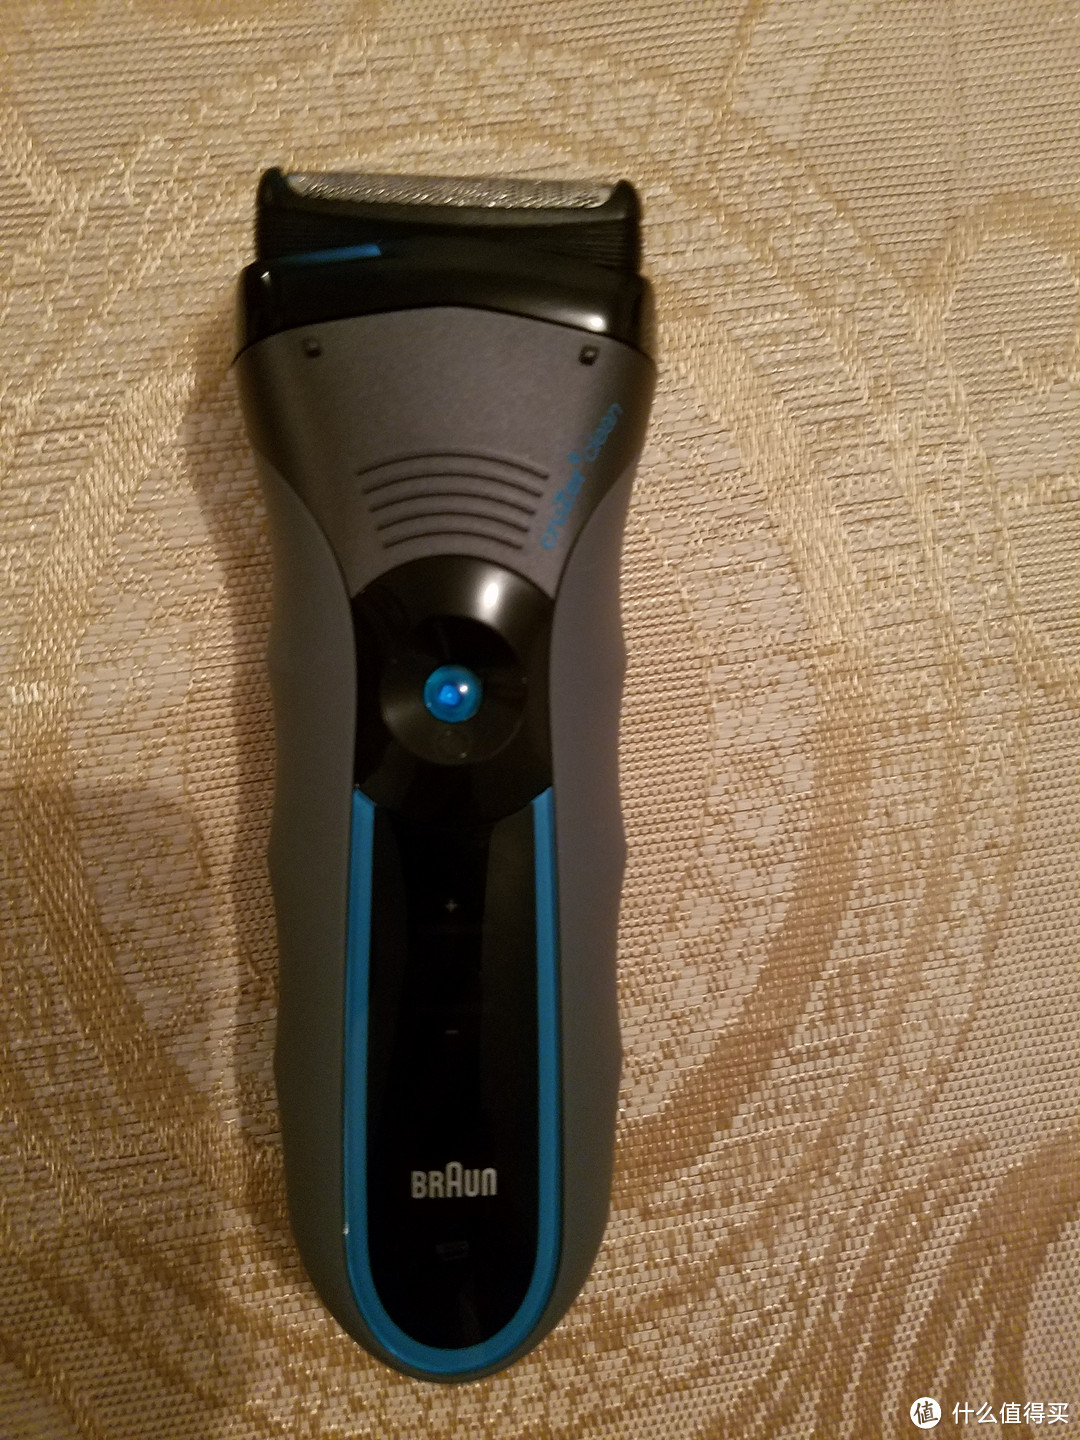 我的第一款电动剃须产品——BRAUN 博朗 cruZer6 剃须刀 开箱及使用测评